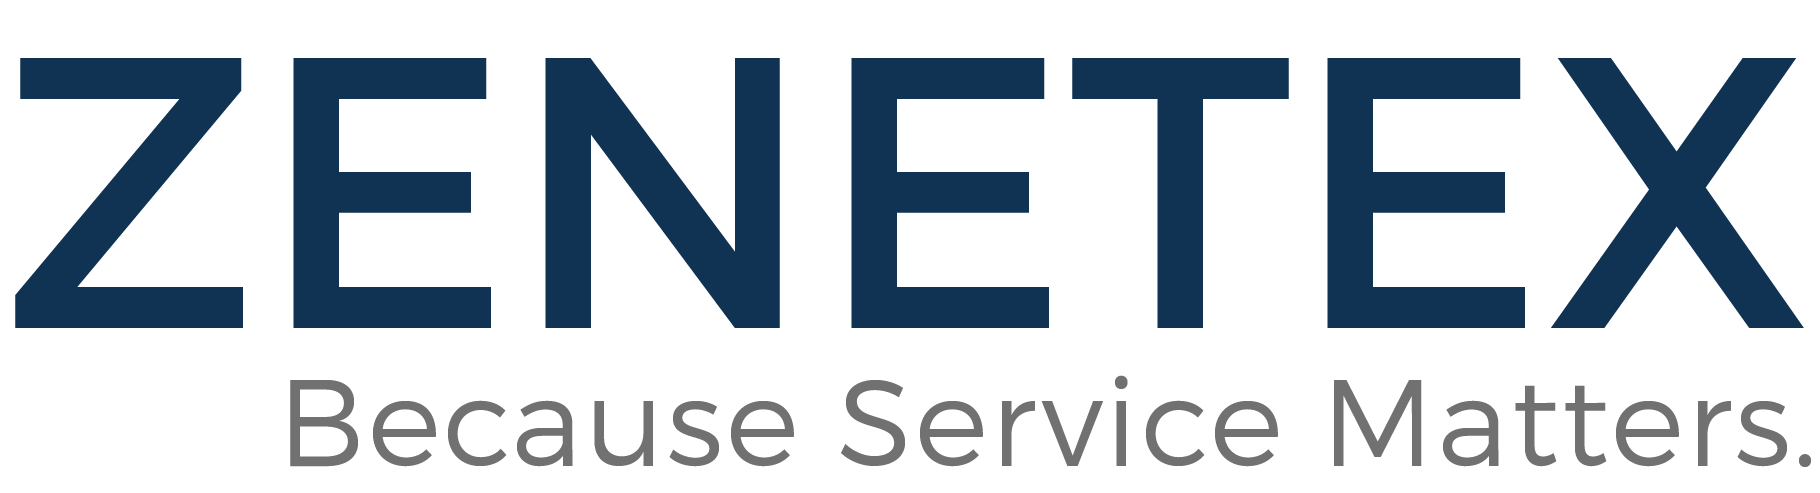 Zenetex Company Logo